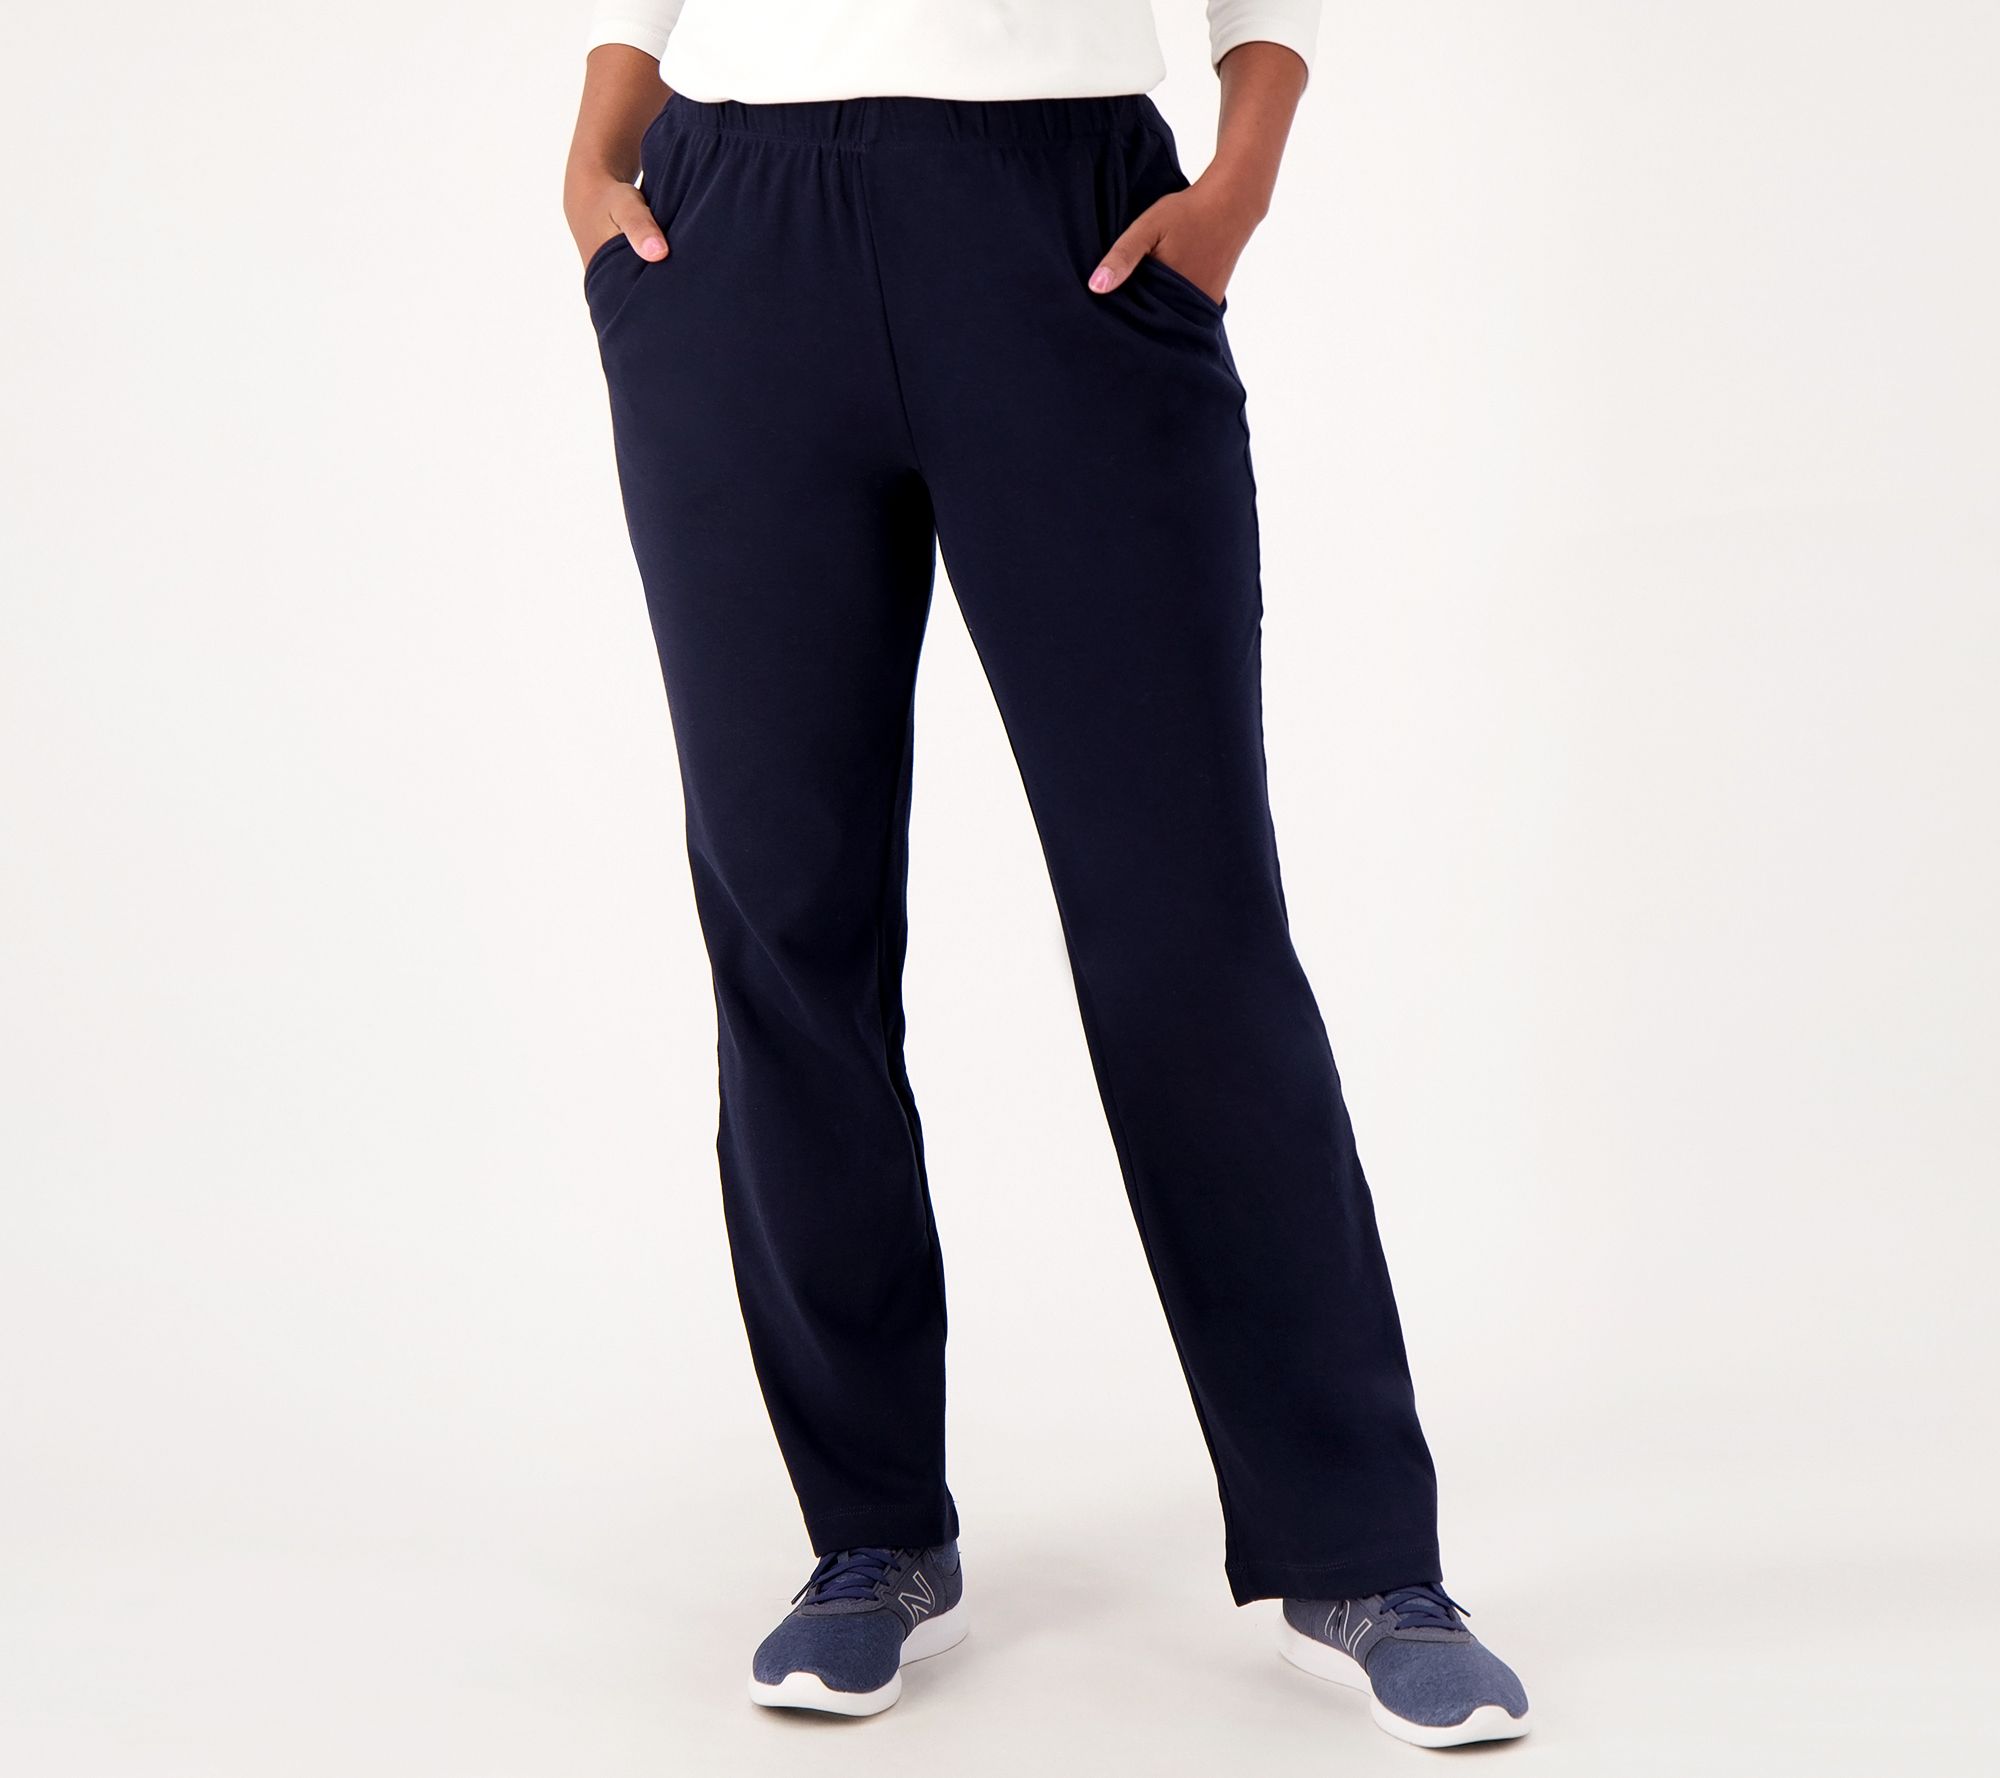 Core knit capri athletic pants  Athletic pants, Pant shopping, Clothes  design